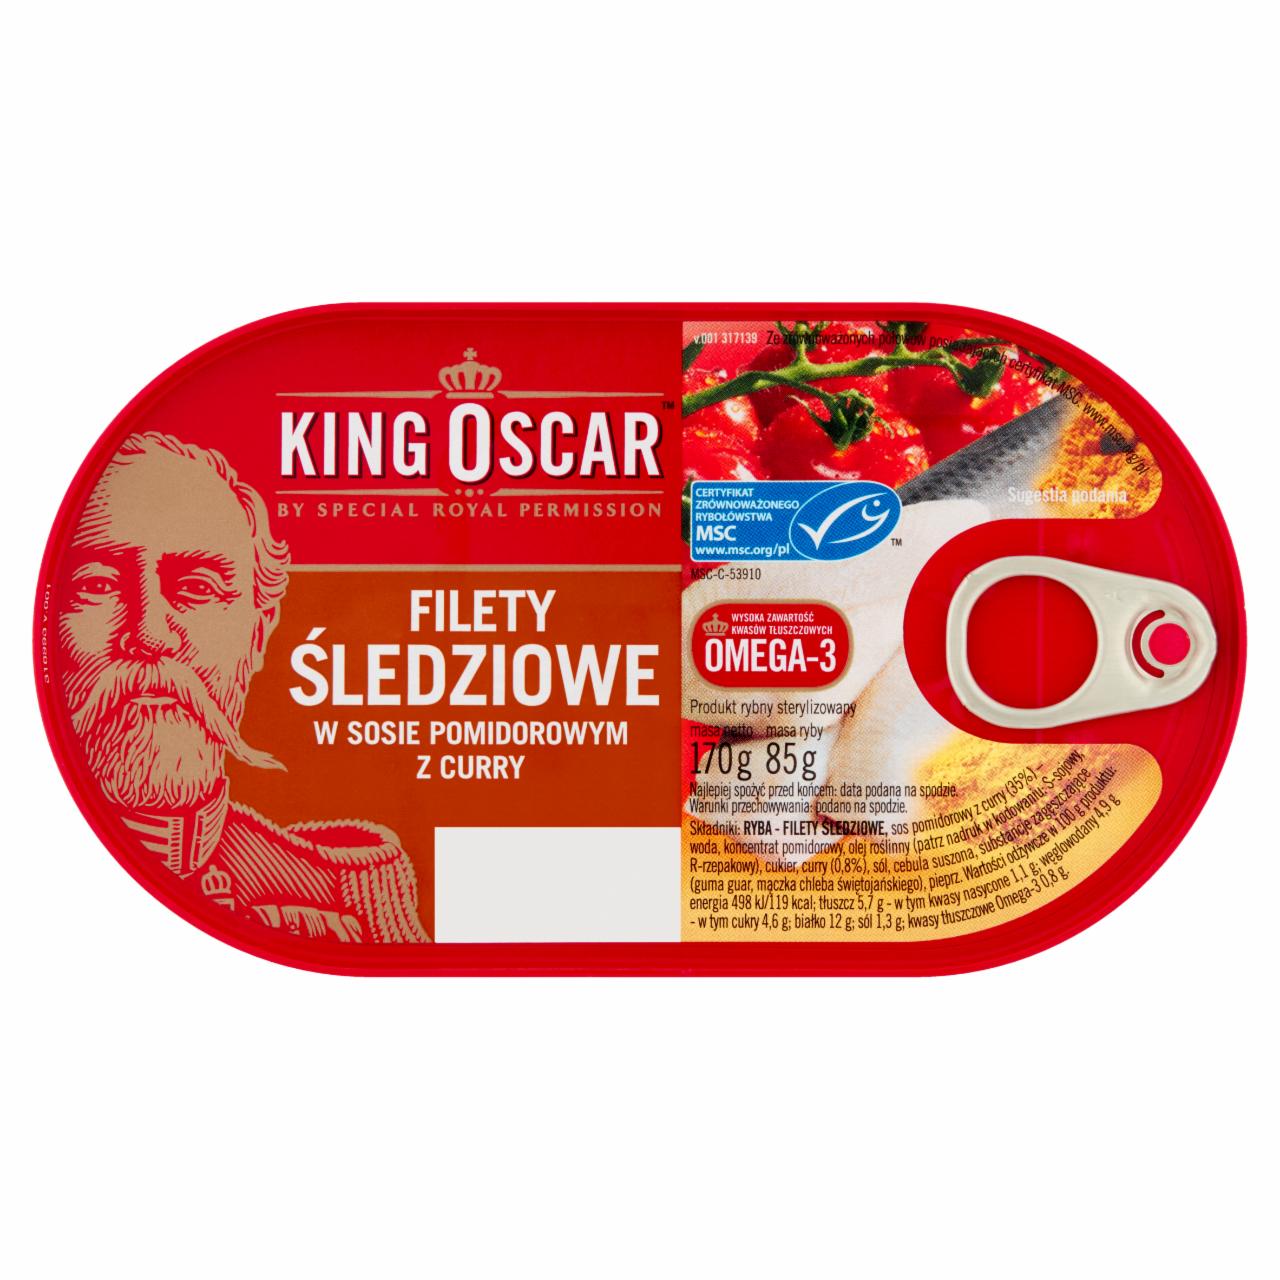 Zdjęcia - King Oscar Filety śledziowe w sosie pomidorowym z curry 170 g